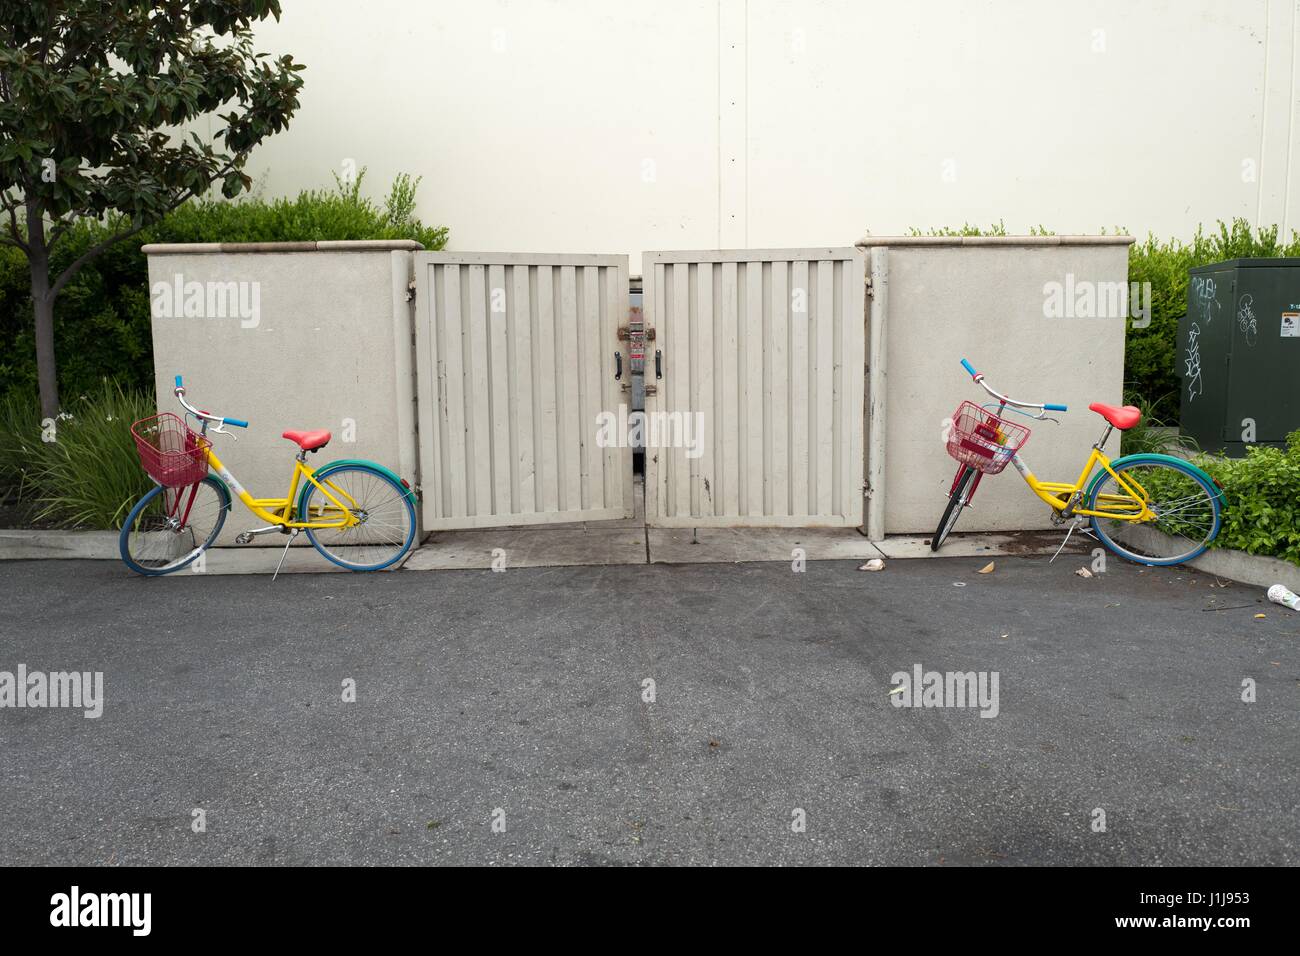 Deux vélos sont Google au hasard stationné près d'une benne à ordures près du Googleplex, le siège de la Silicon Valley et de la technologie du moteur de recherche Google Inc, Mountain View, Californie, le 7 avril 2017. Banque D'Images